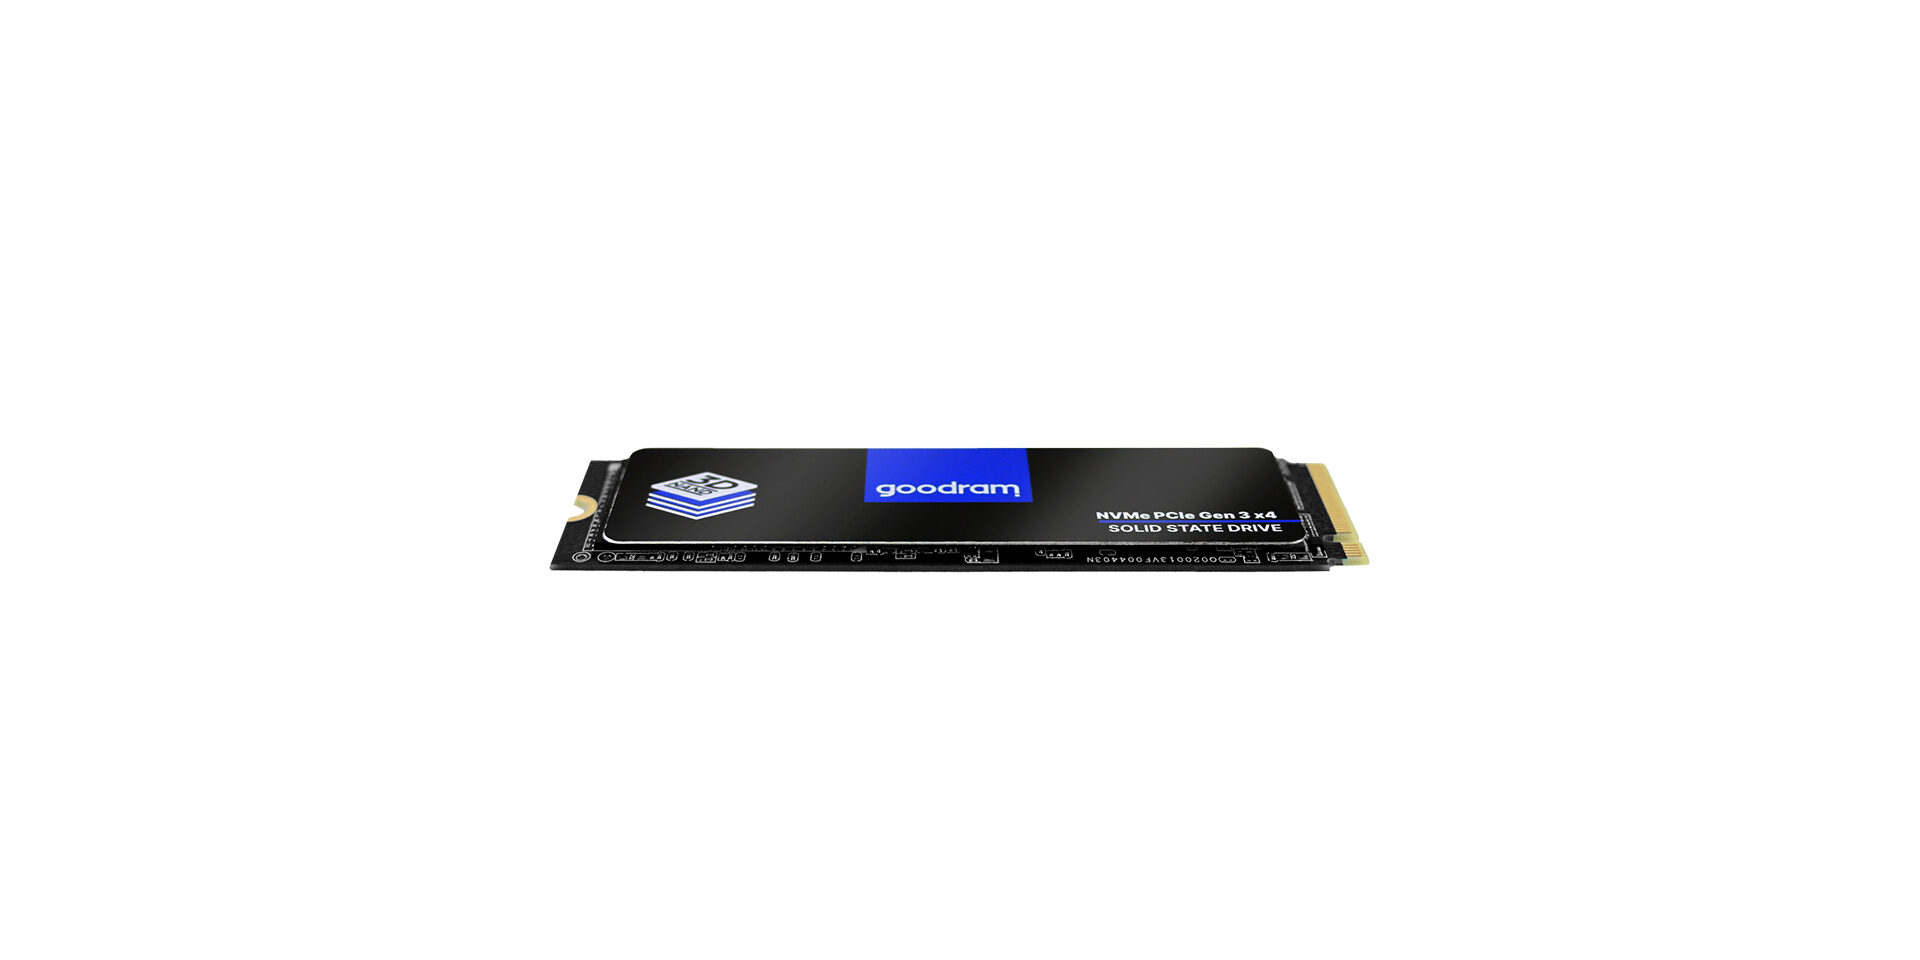 Goodram PX500 SSD, PCIe 3x4, 256 GB, M.2 2280, NVMe, RETAIL GEN2